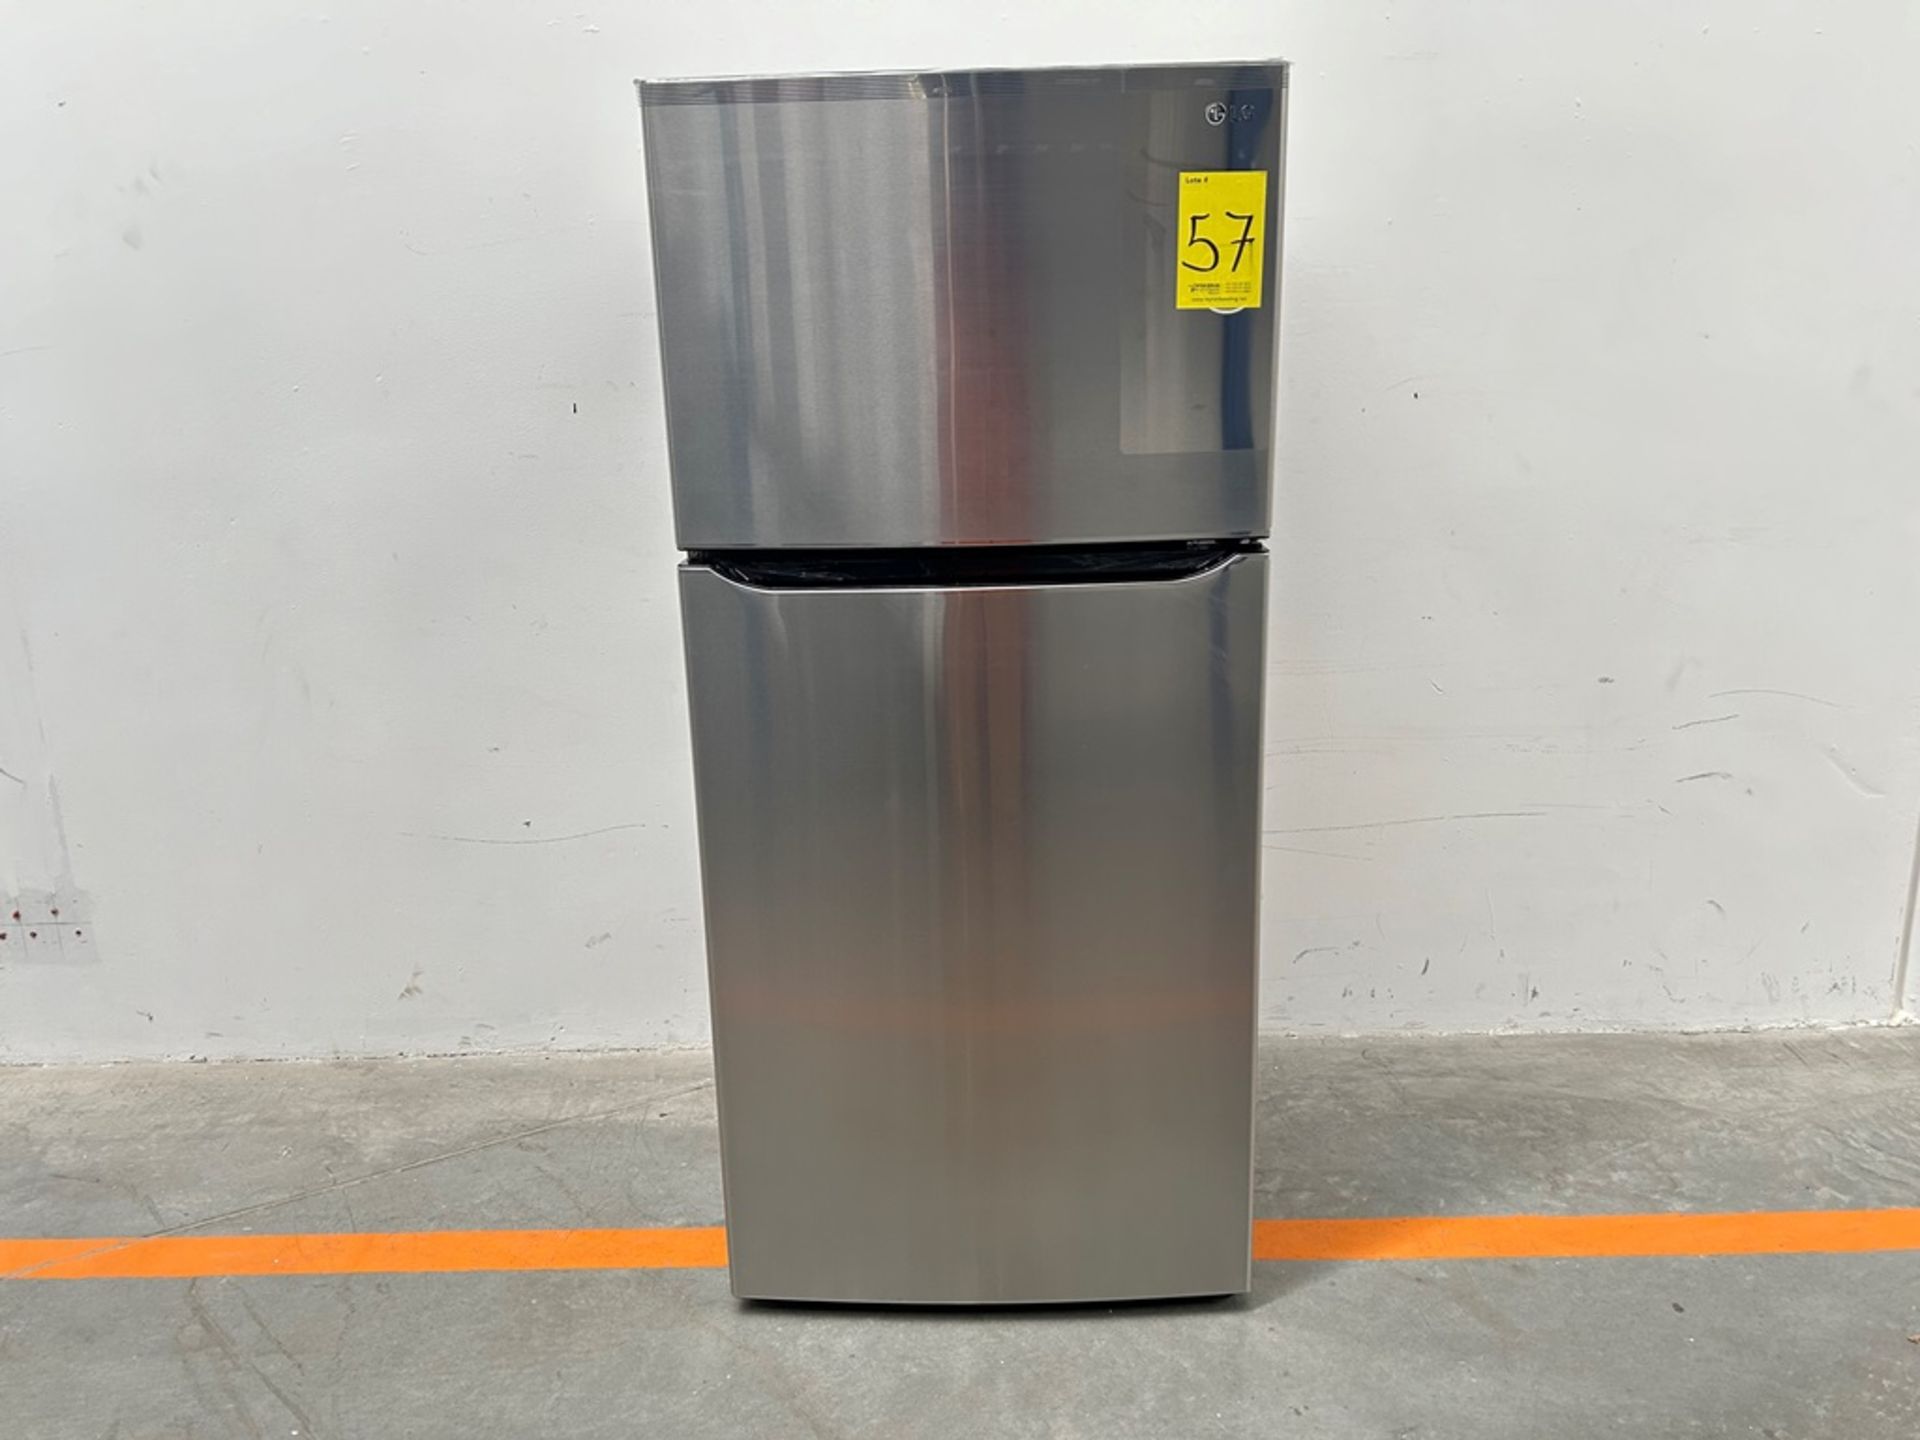 (NUEVO) Refrigerador Marca LG, Modelo LT57BPSX, Serie 2D689, Color GRIS